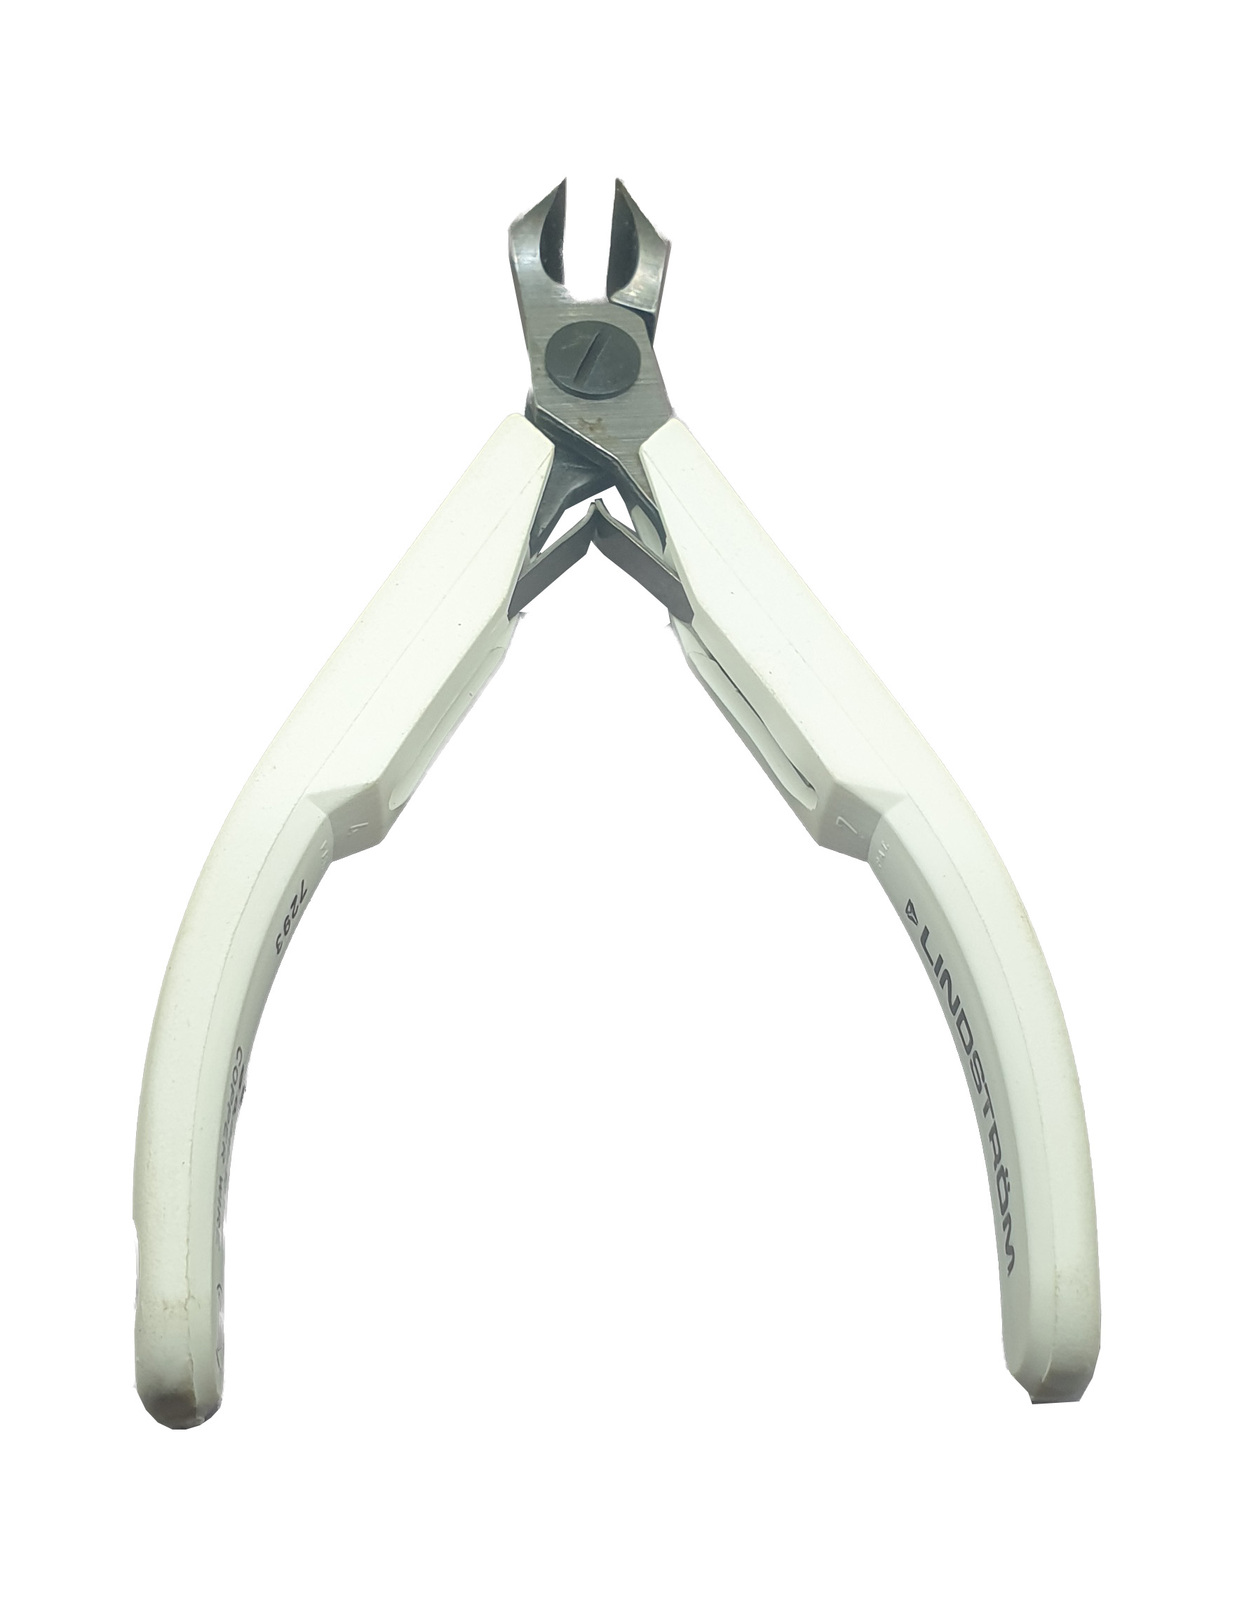 Mini Flush Cutting Jewelry Pliers-PLIER-CUTTING-PL430